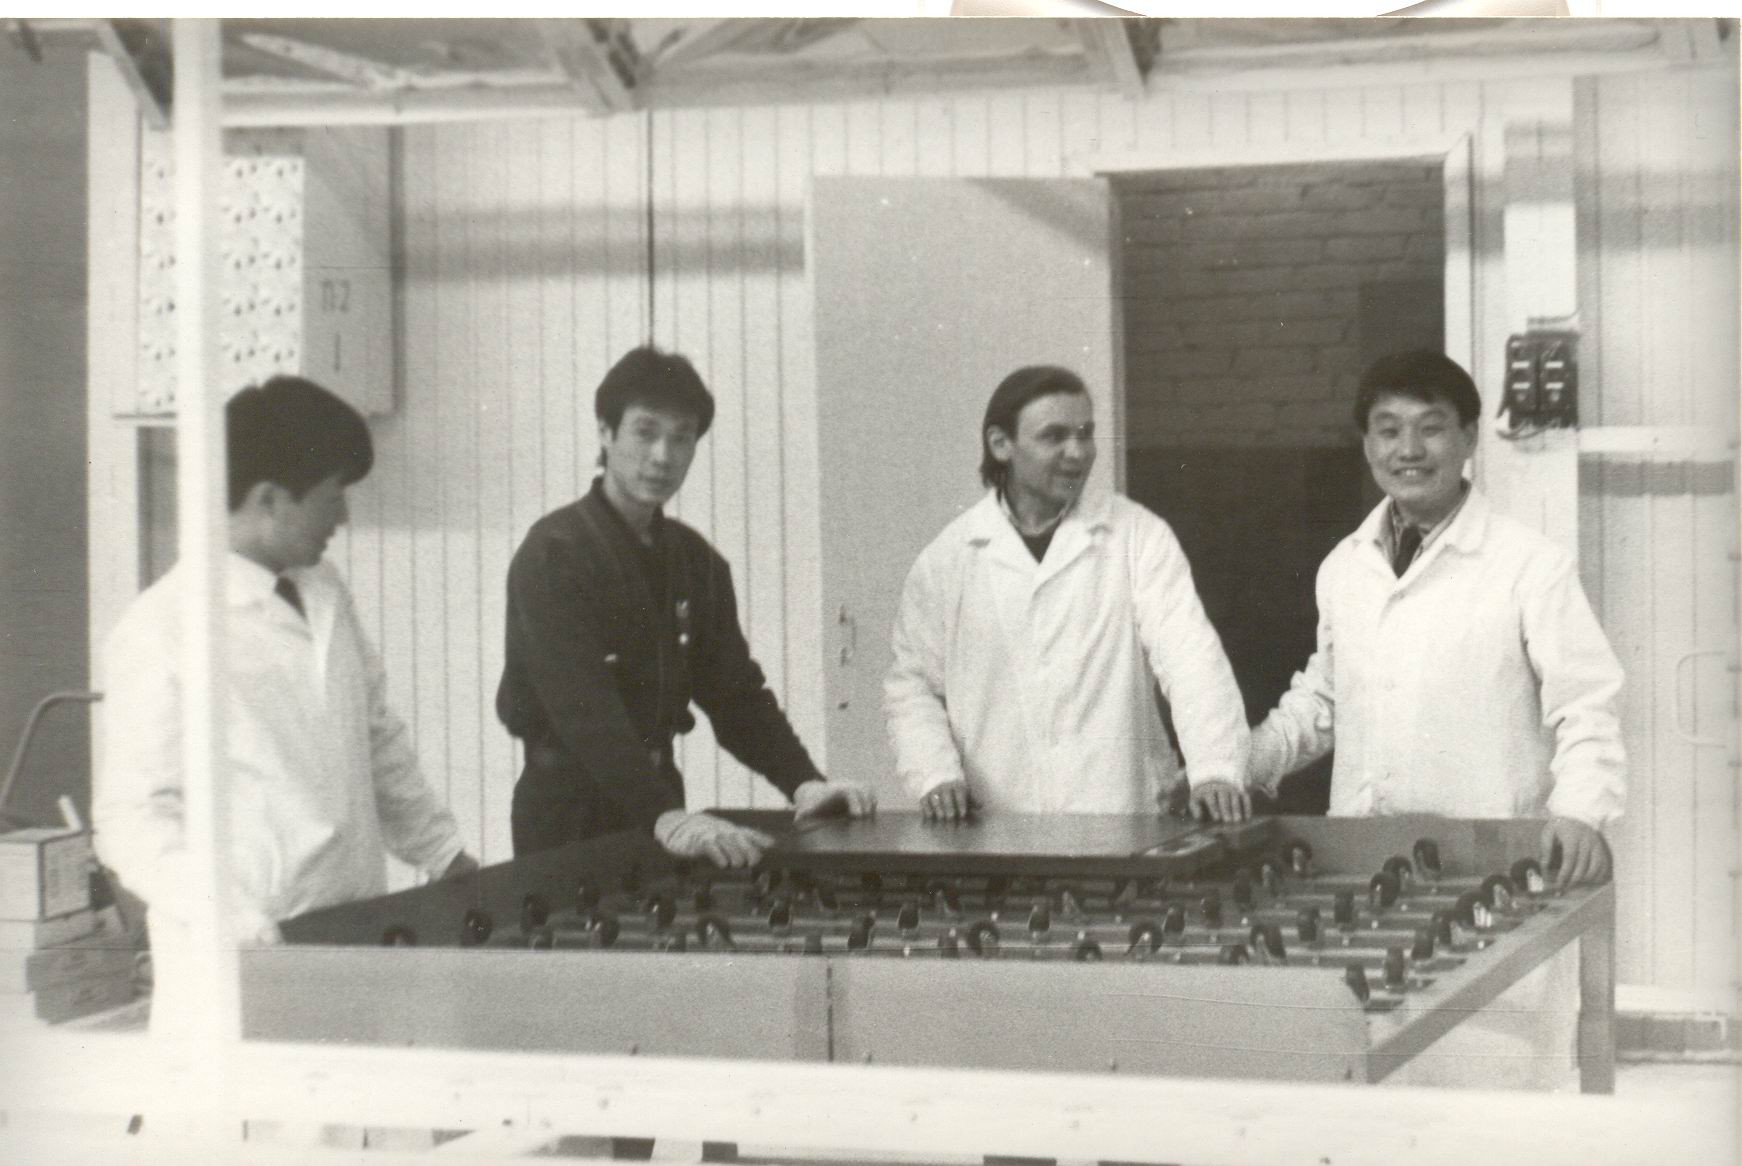 Май 1992 года ознаменовался шеф-монтажом сборочного конвейера под кураторством специалистов из Кореи